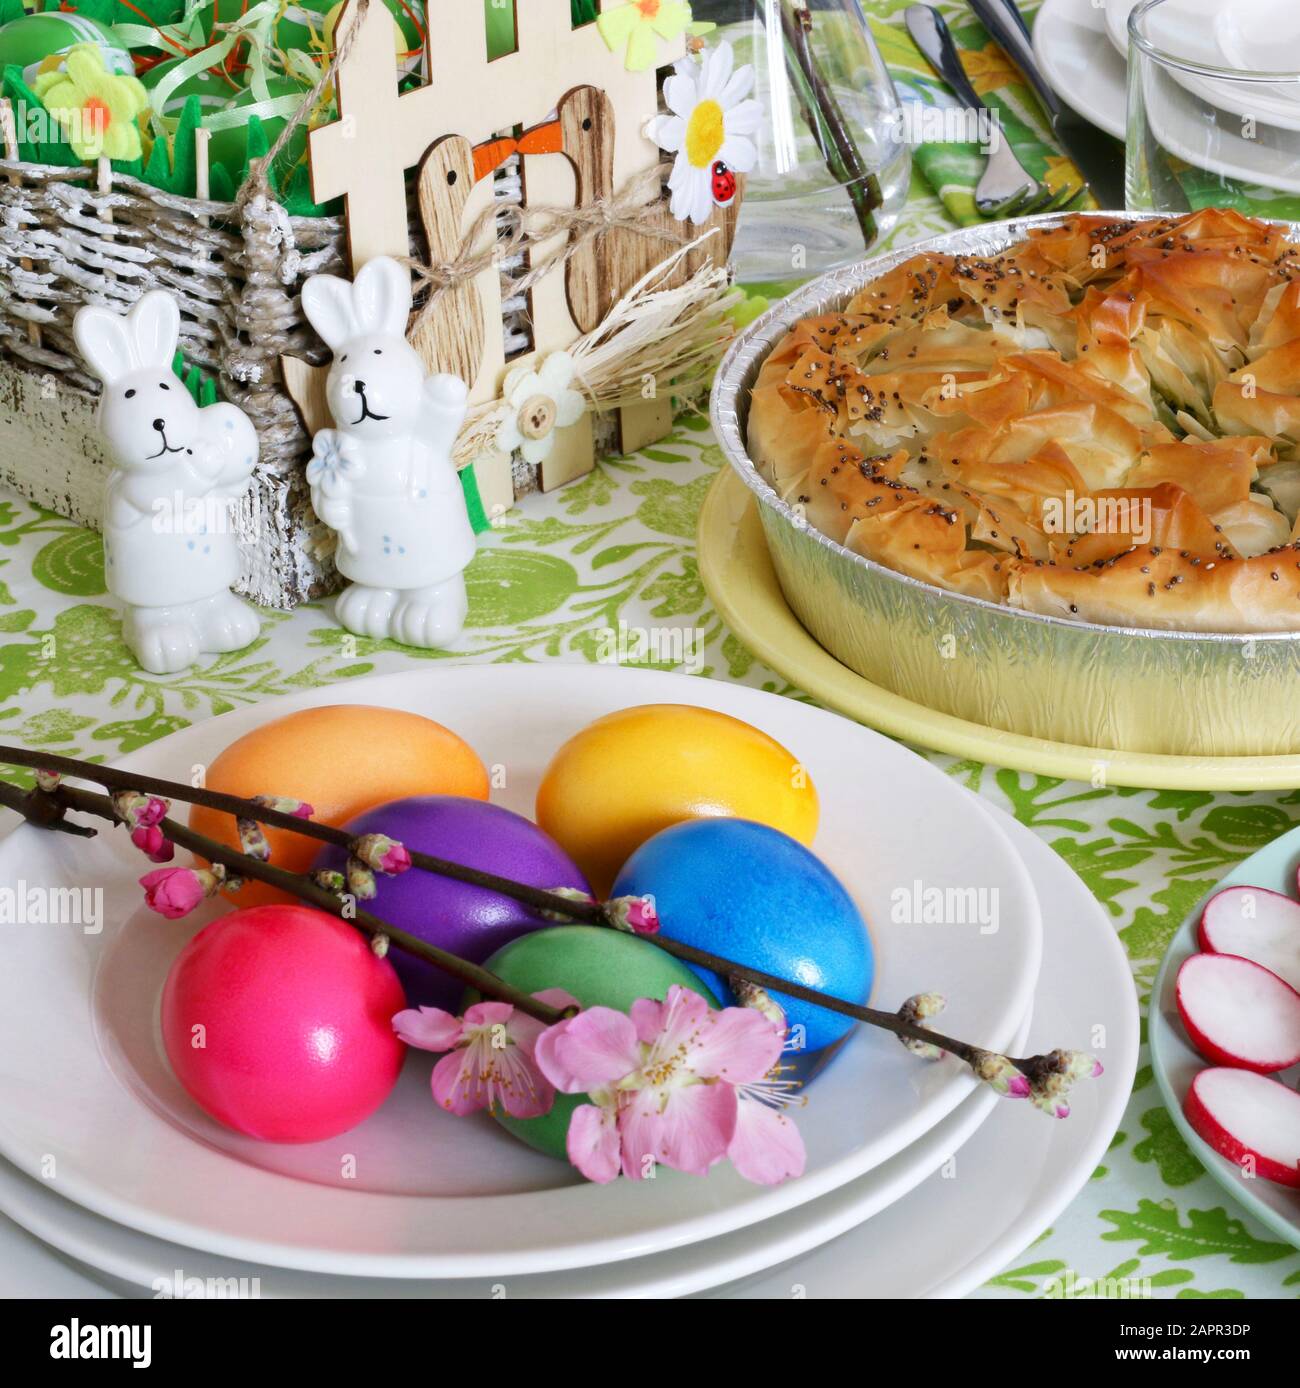 Konzept Frühlings-Feiertag.Ostertischdekoration. Eierkorb, Frühlingsblumen und bunte Einrichtung. Brot, Käse, Spinatkuchen, Fleischkugel, Gemüse. Stockfoto